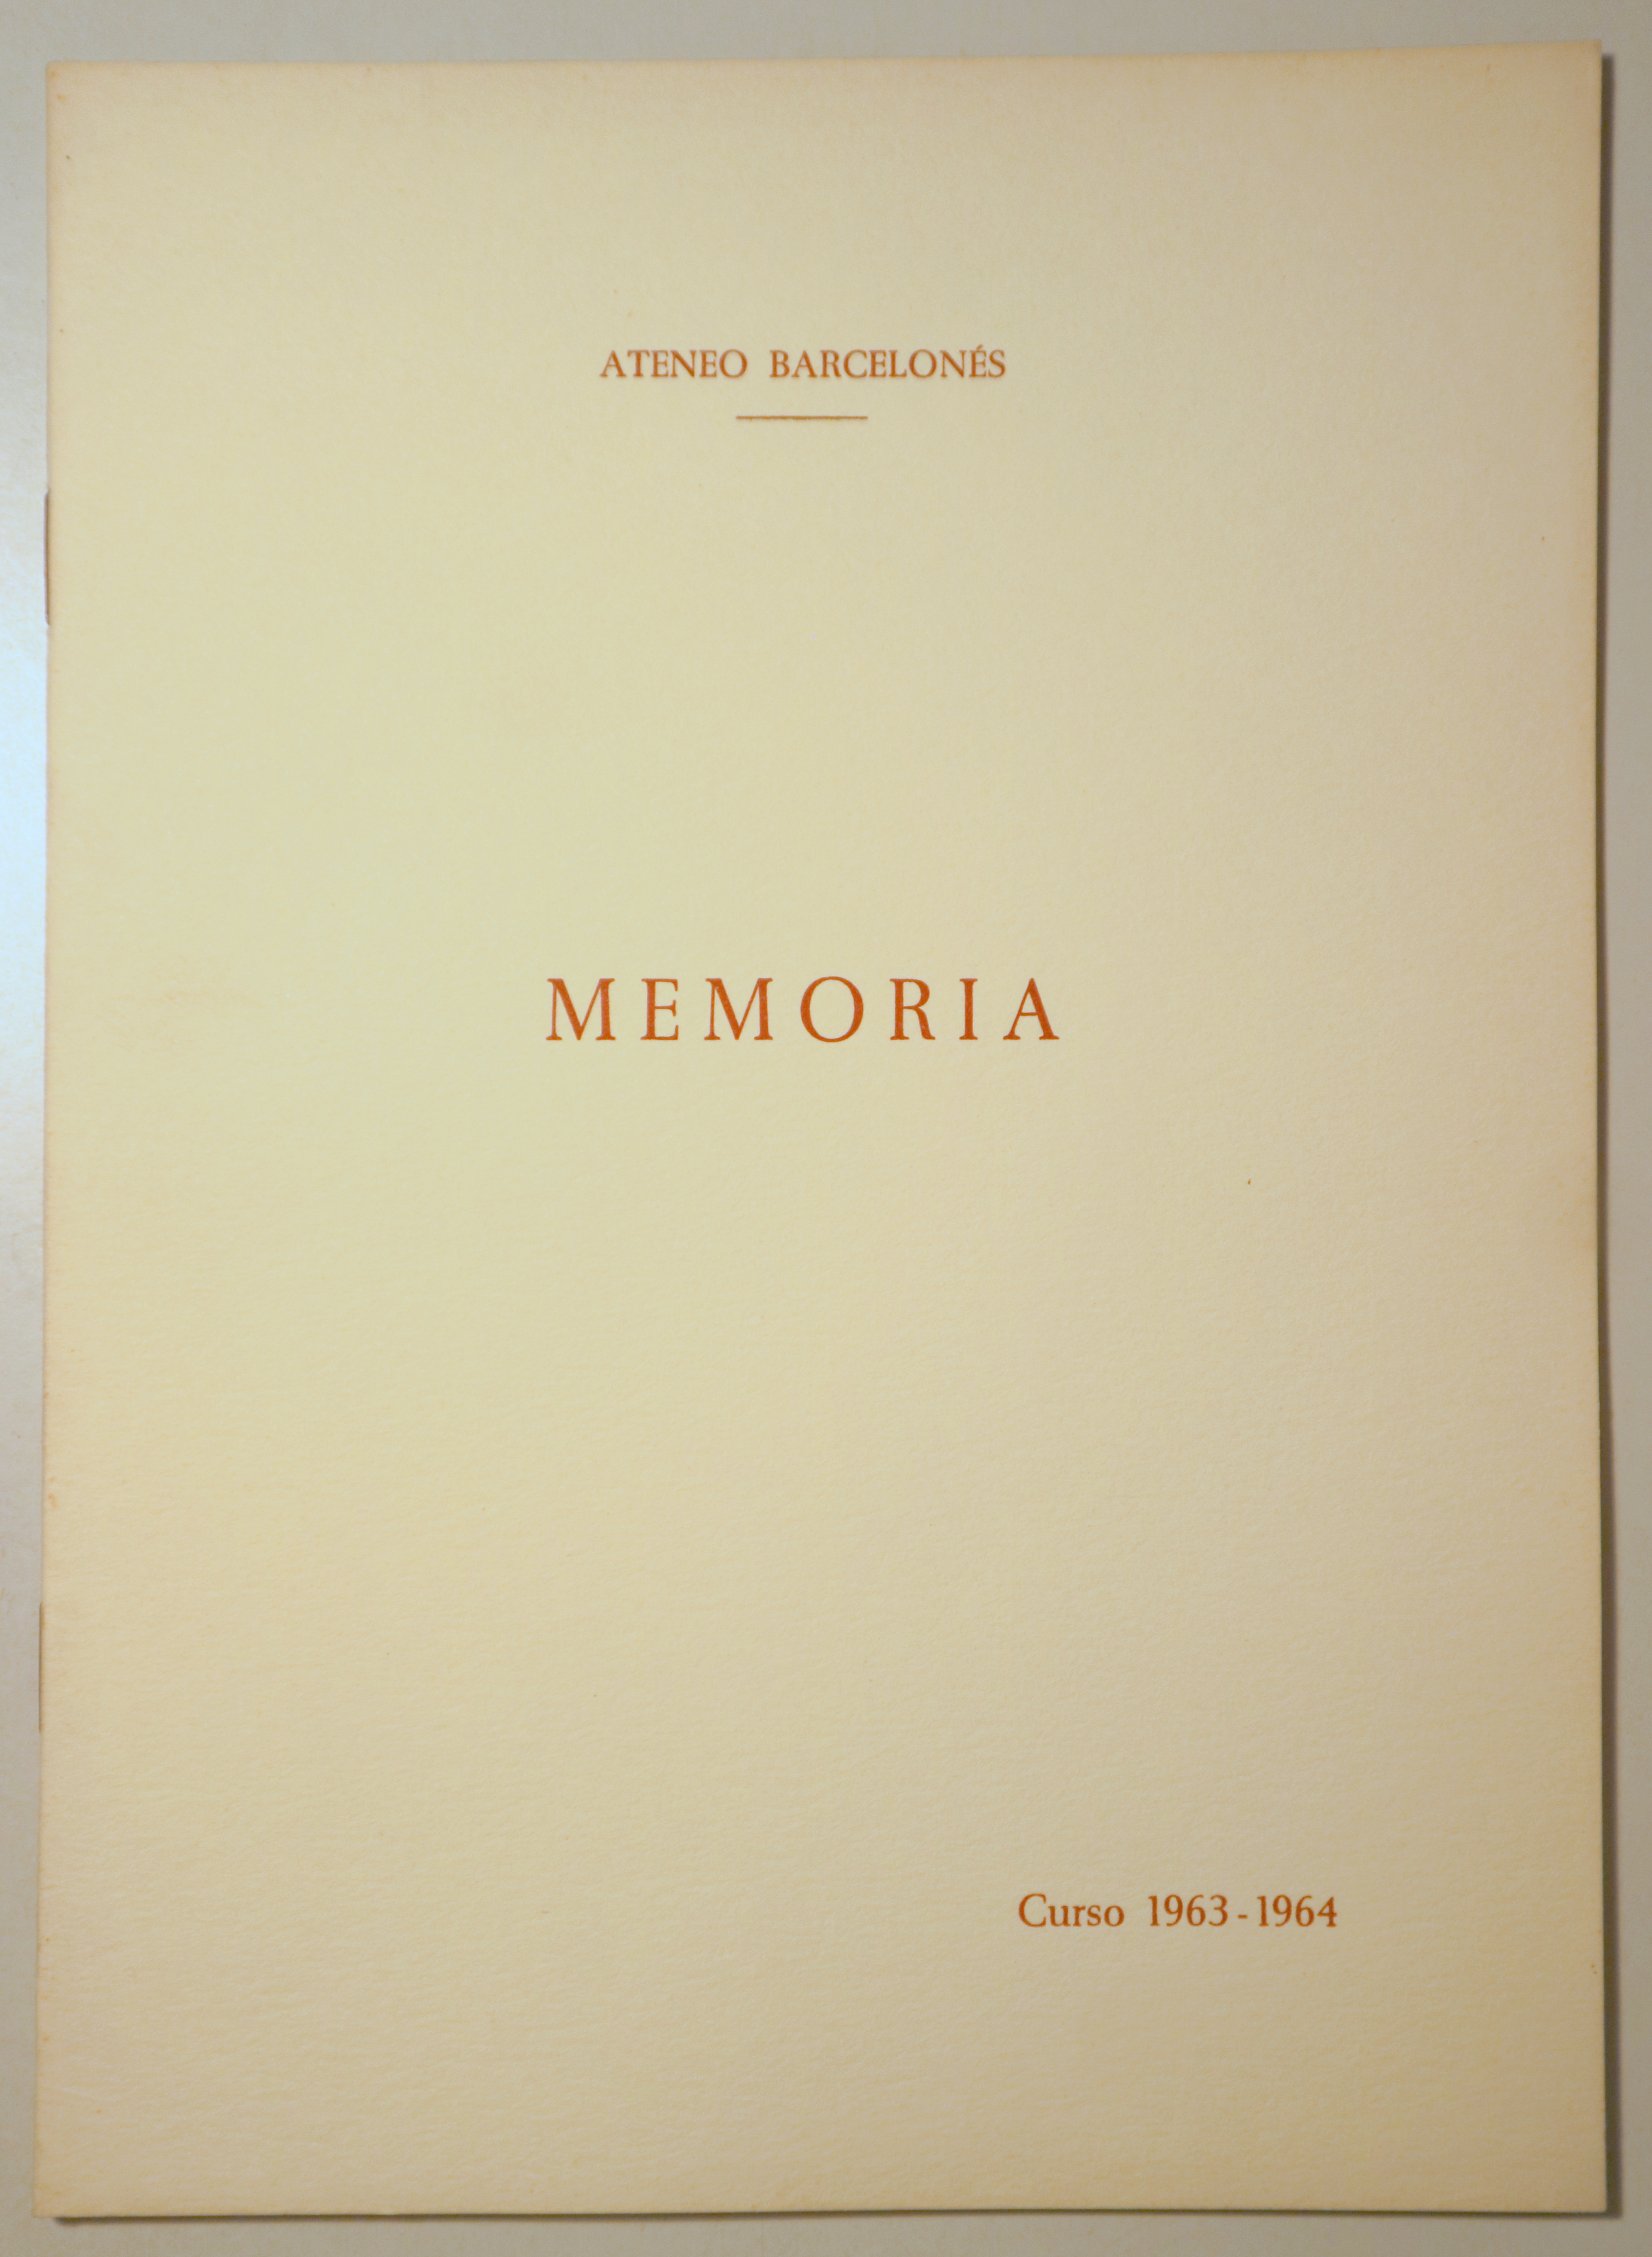 ATENEO BARCELONÉS. MEMORIA. Curso 1963-64 - Barcelona 1964